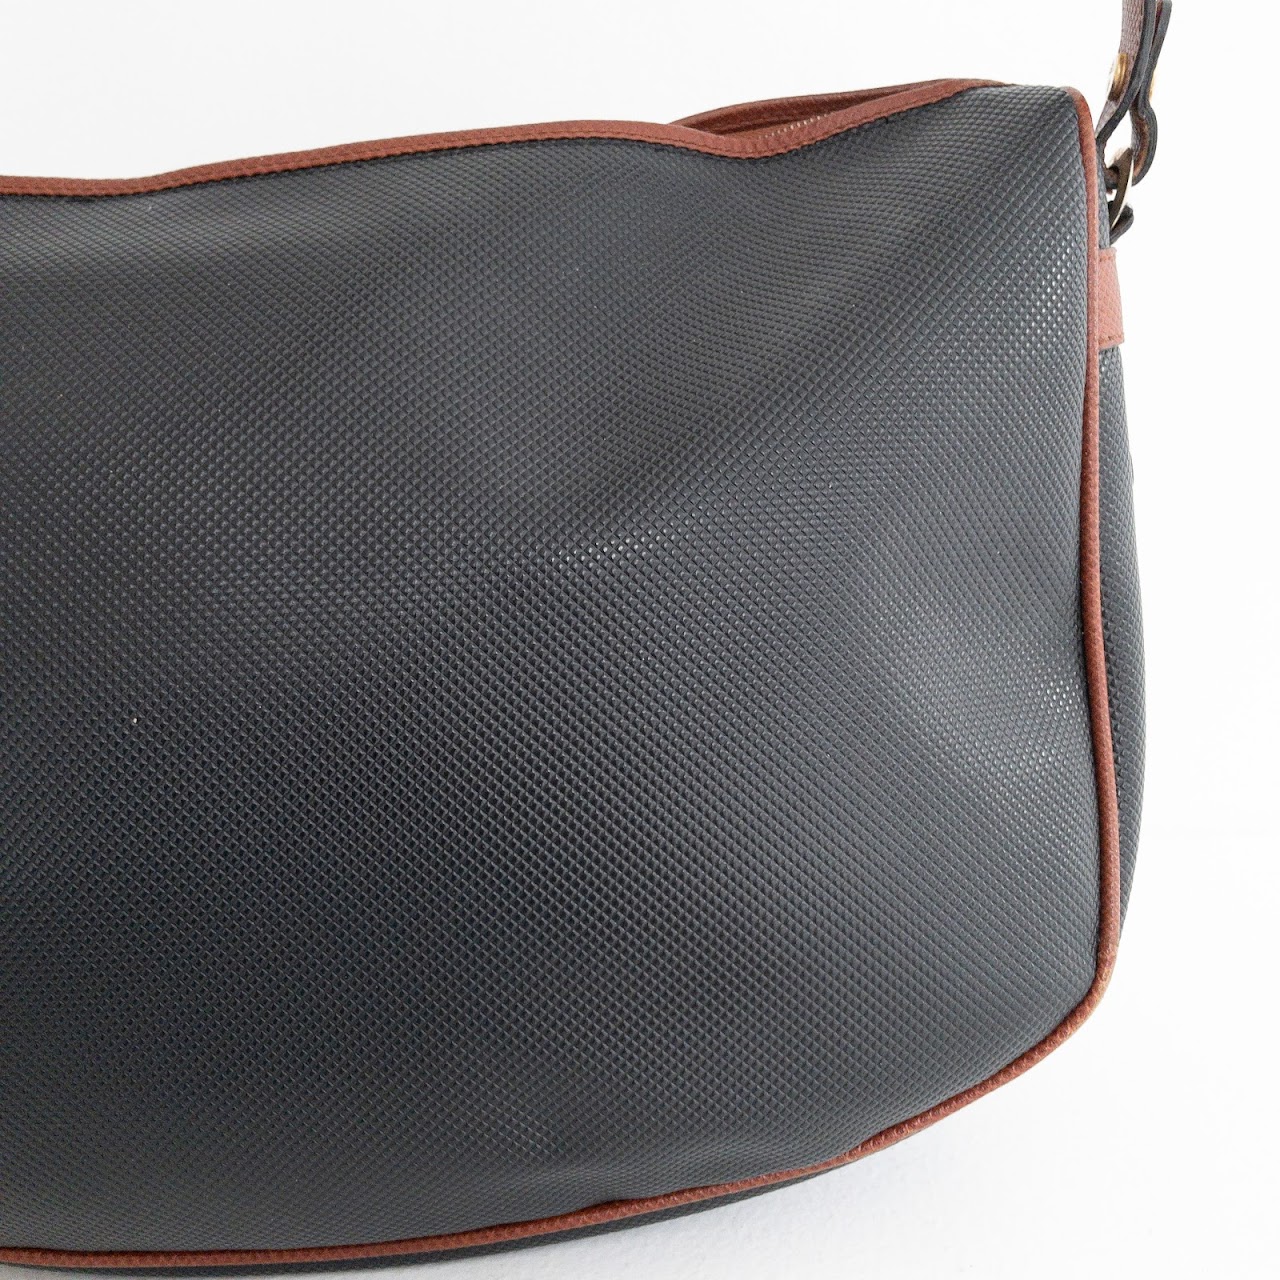 Bottega Veneta Embossed Leather Handbag